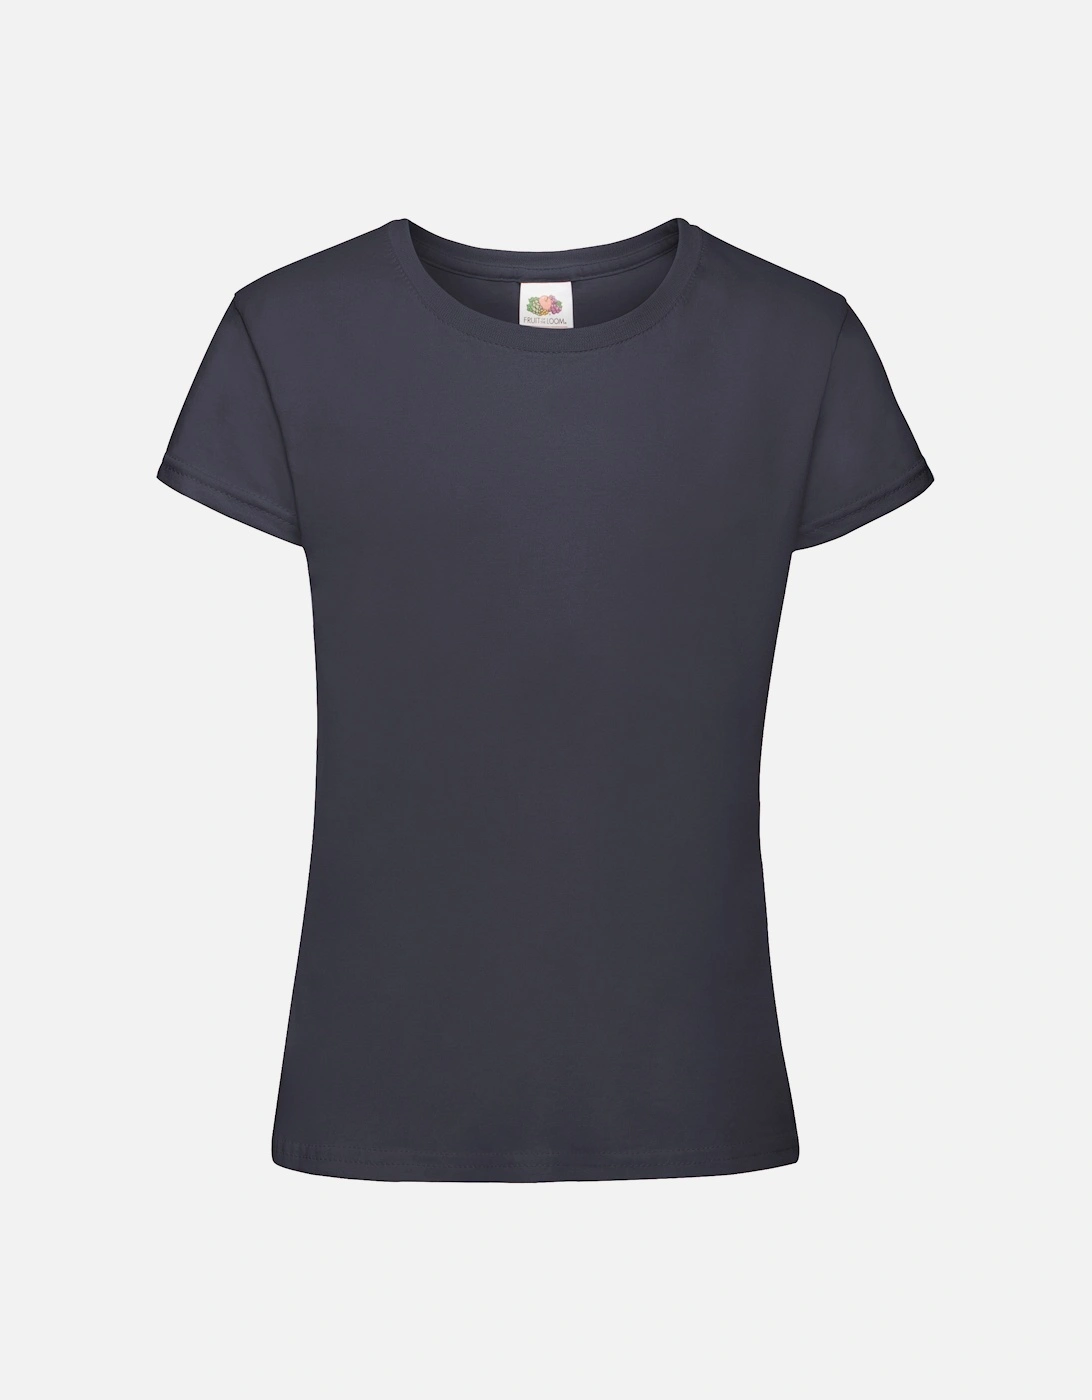 Girls Sofspun Short Sleeve T-Shirt (Pack of 2), 2 of 1